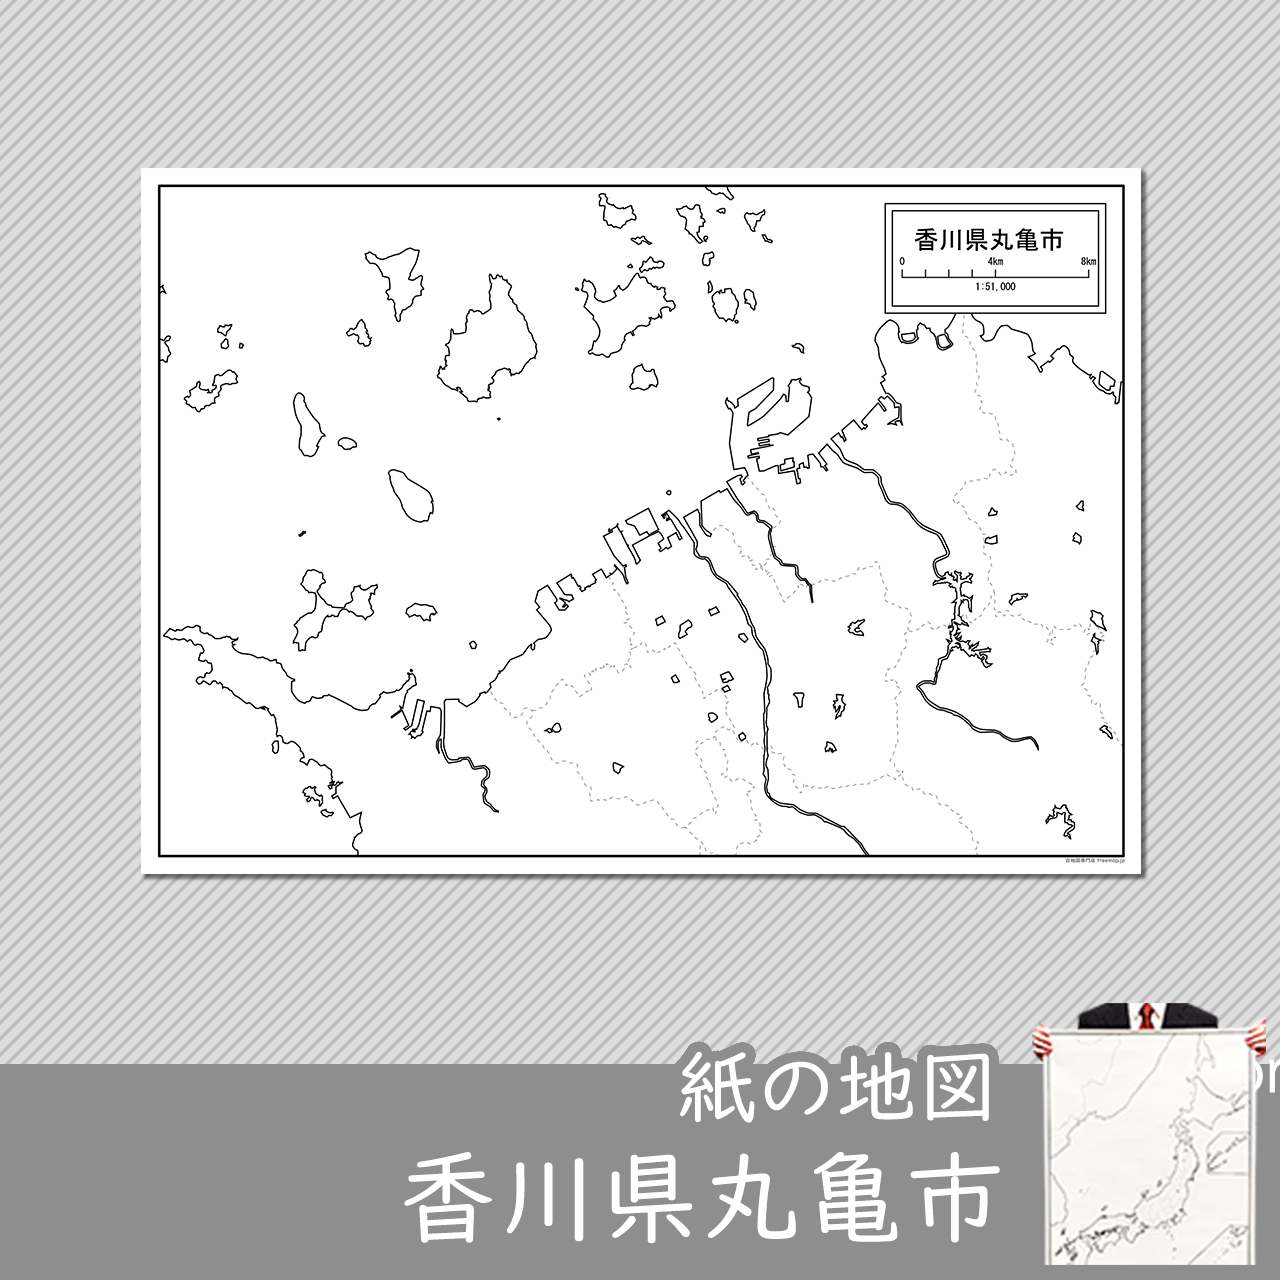 丸亀市の紙の白地図のサムネイル